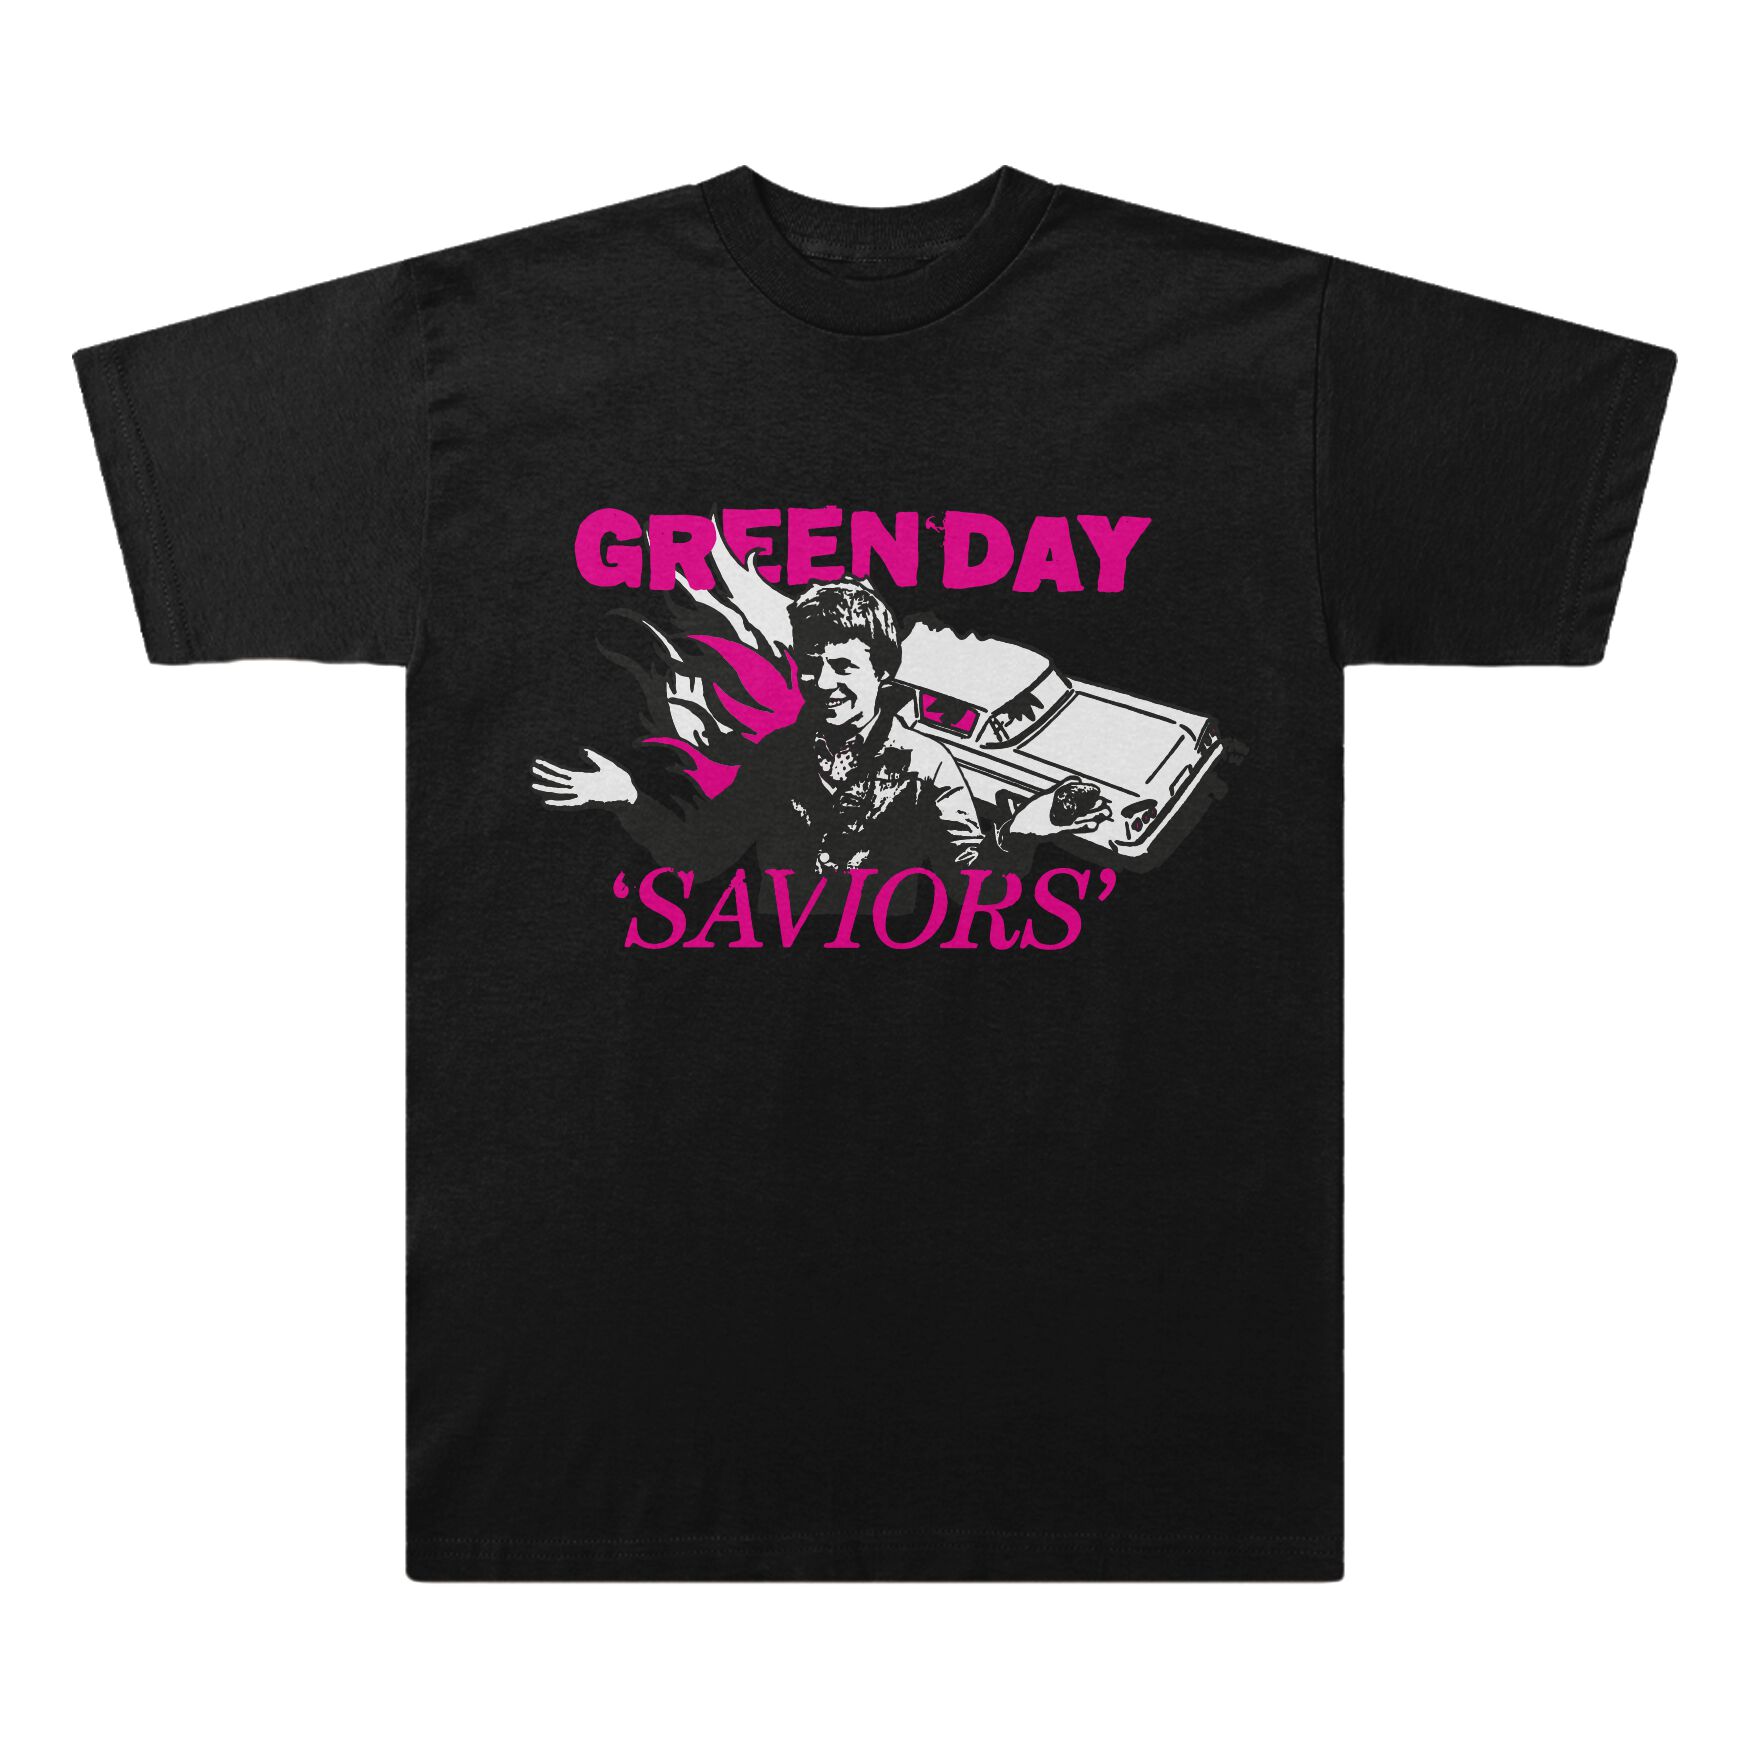 Green Day T-Shirt - Saviors Illustration - S bis XXL - für Männer - Größe S - schwarz  - Lizenziertes Merchandise!